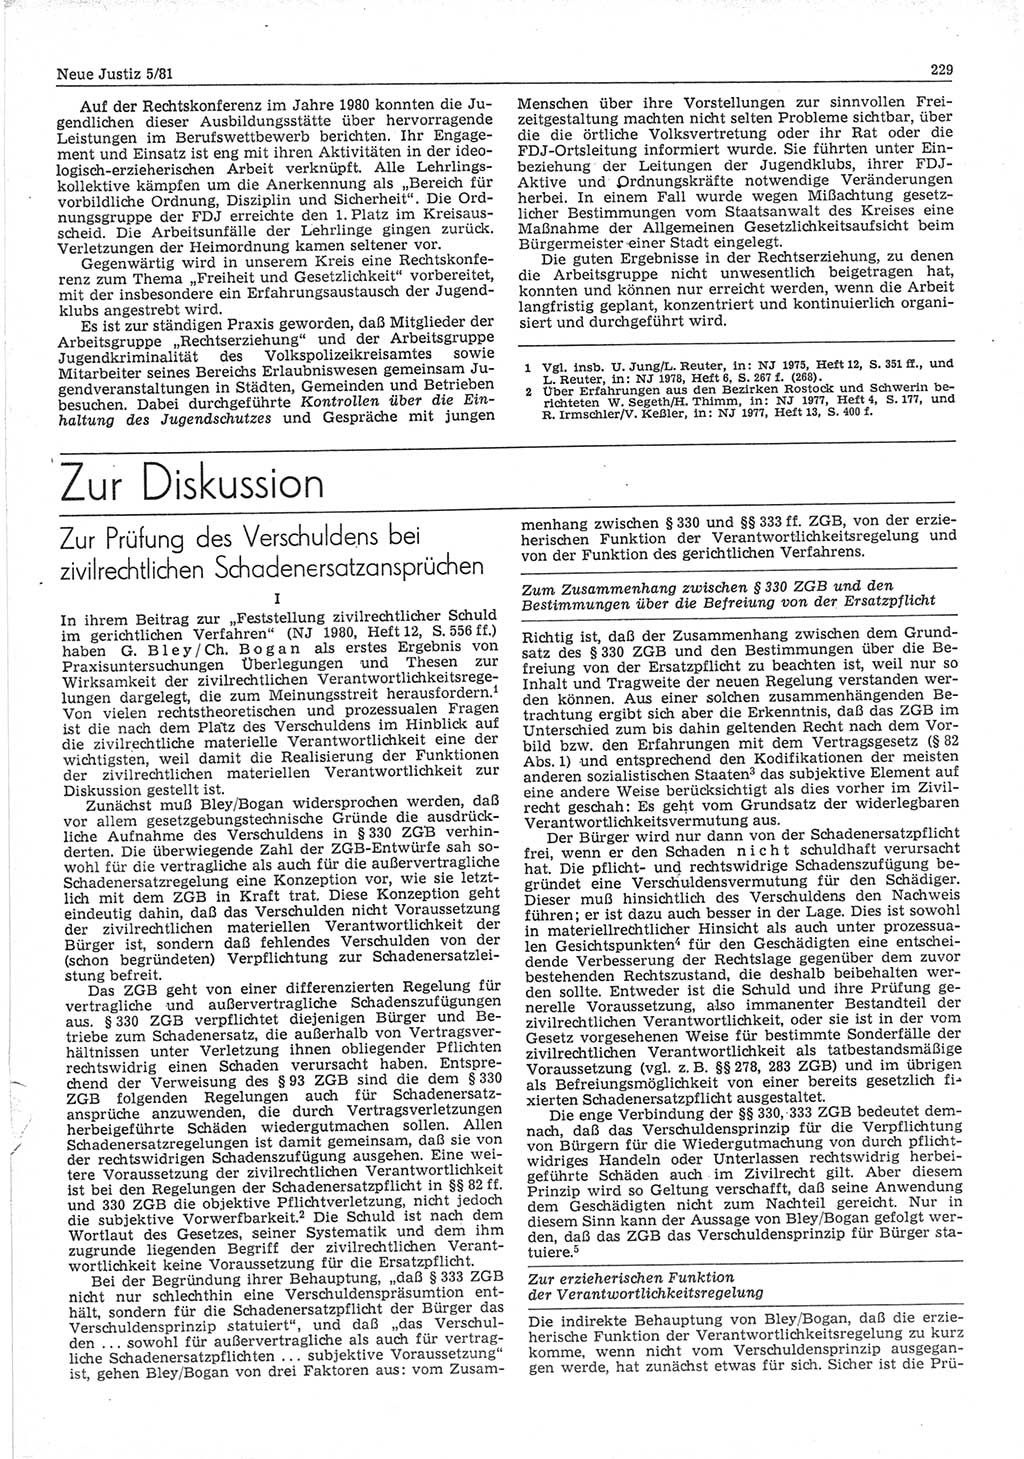 Neue Justiz (NJ), Zeitschrift für sozialistisches Recht und Gesetzlichkeit [Deutsche Demokratische Republik (DDR)], 35. Jahrgang 1981, Seite 229 (NJ DDR 1981, S. 229)